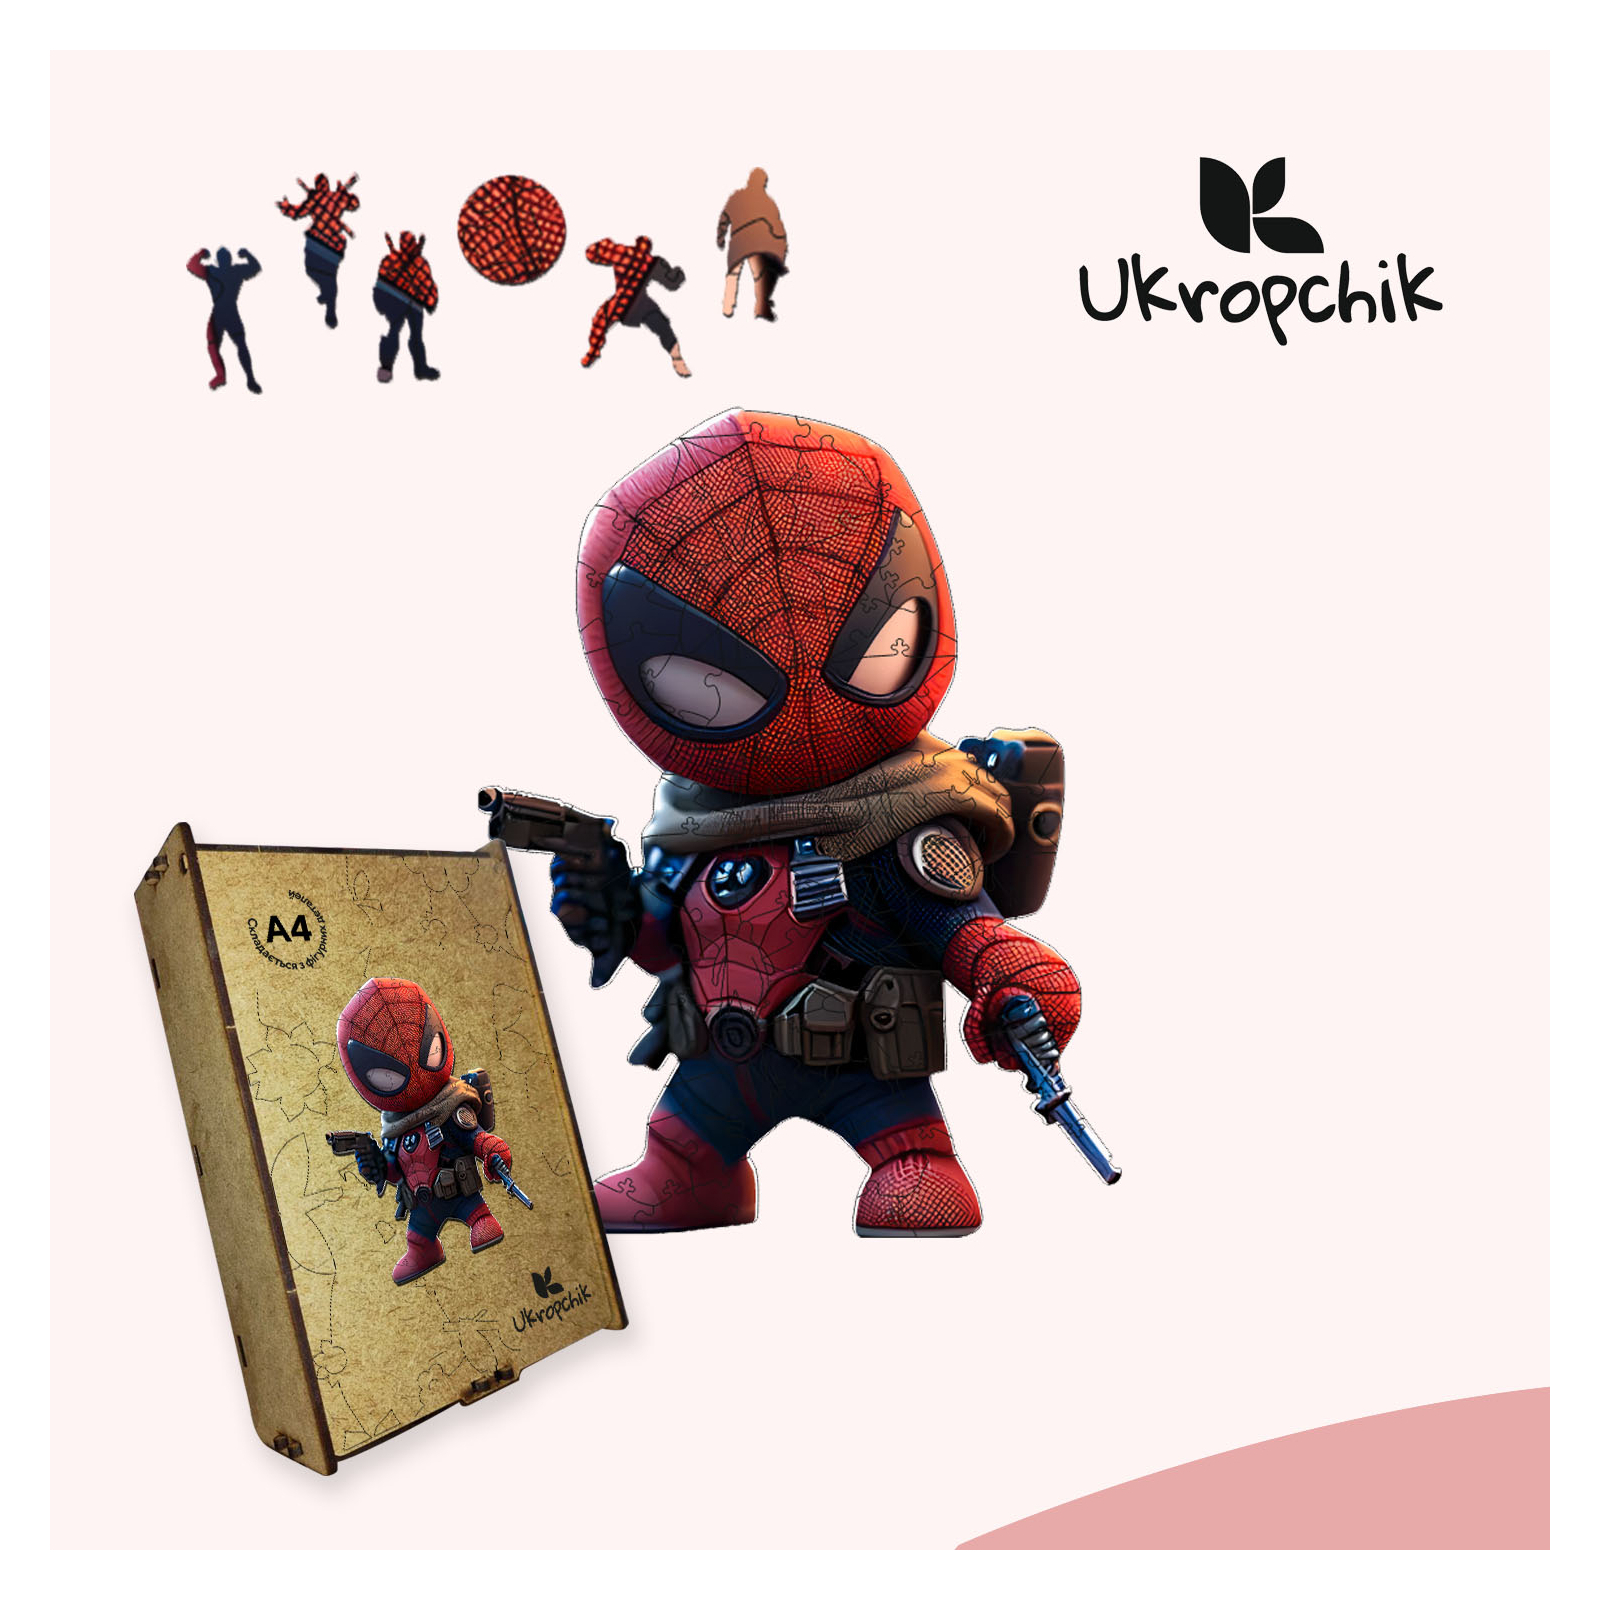 Пазл Ukropchik деревянный Супергерой Дедпул size - M в коробке с набором-рамкой (Deadpool Superhero A4) изображение 5